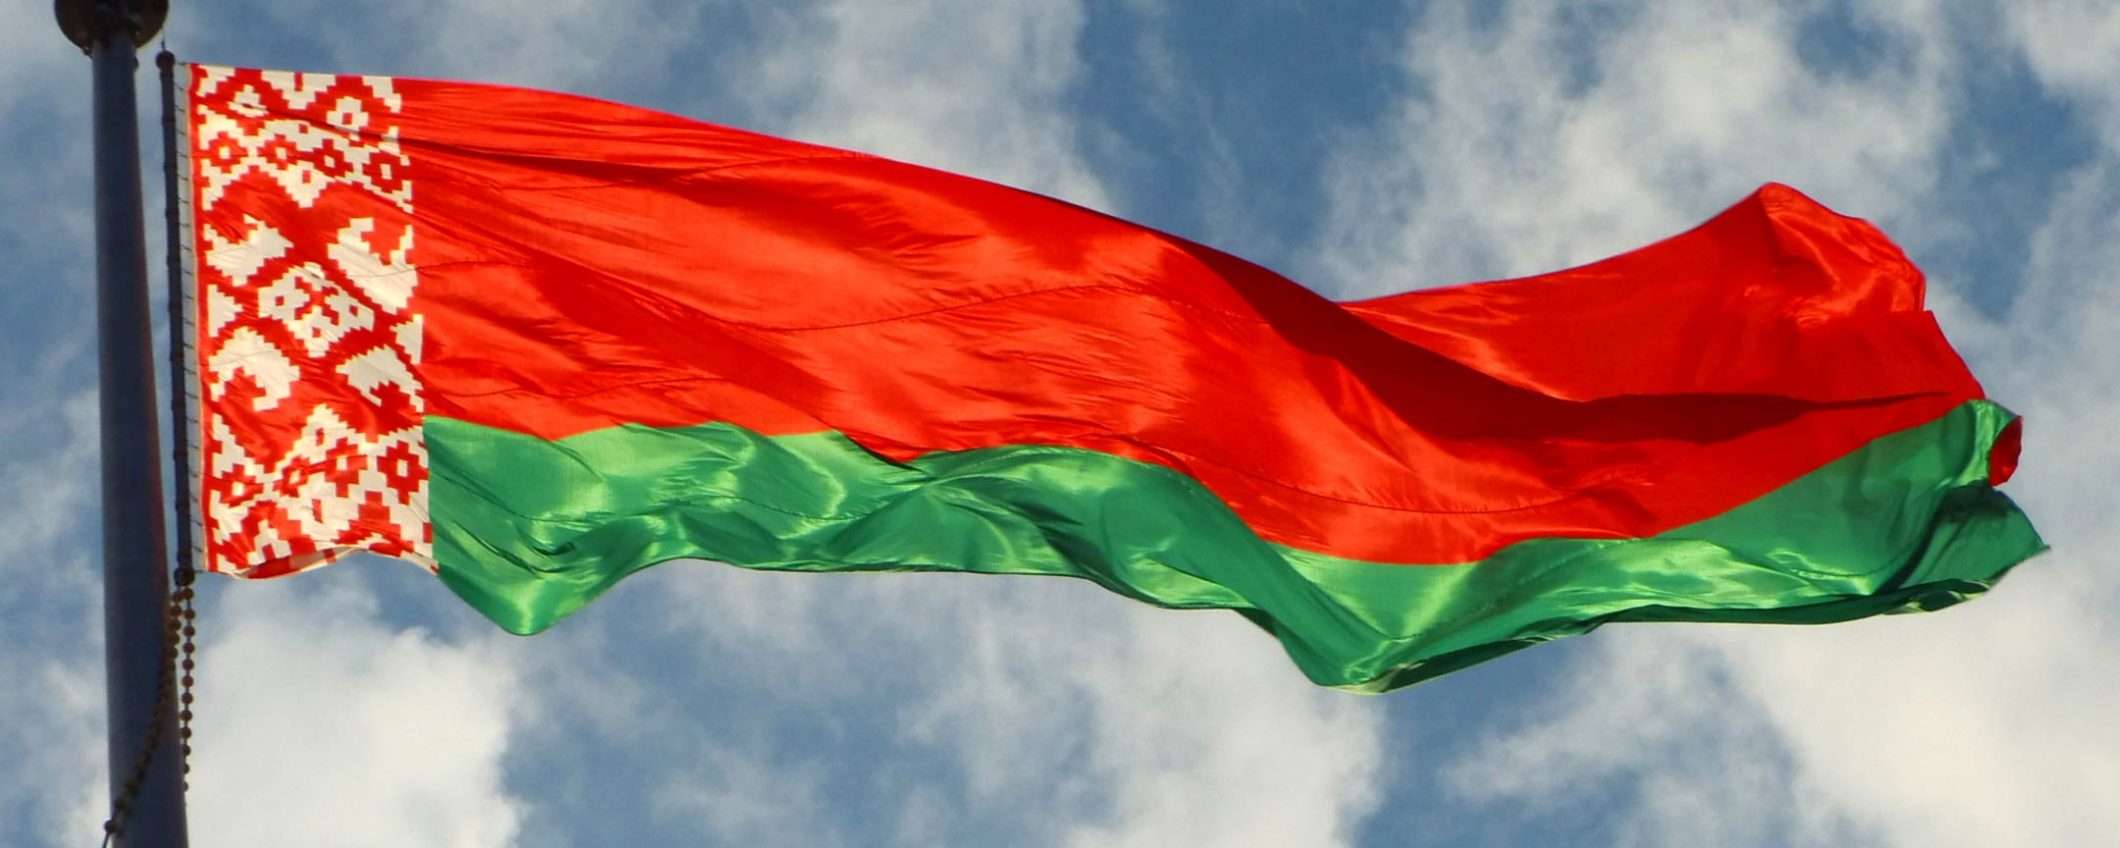 Bielorussia: Lukashenko rieletto e Internet giù